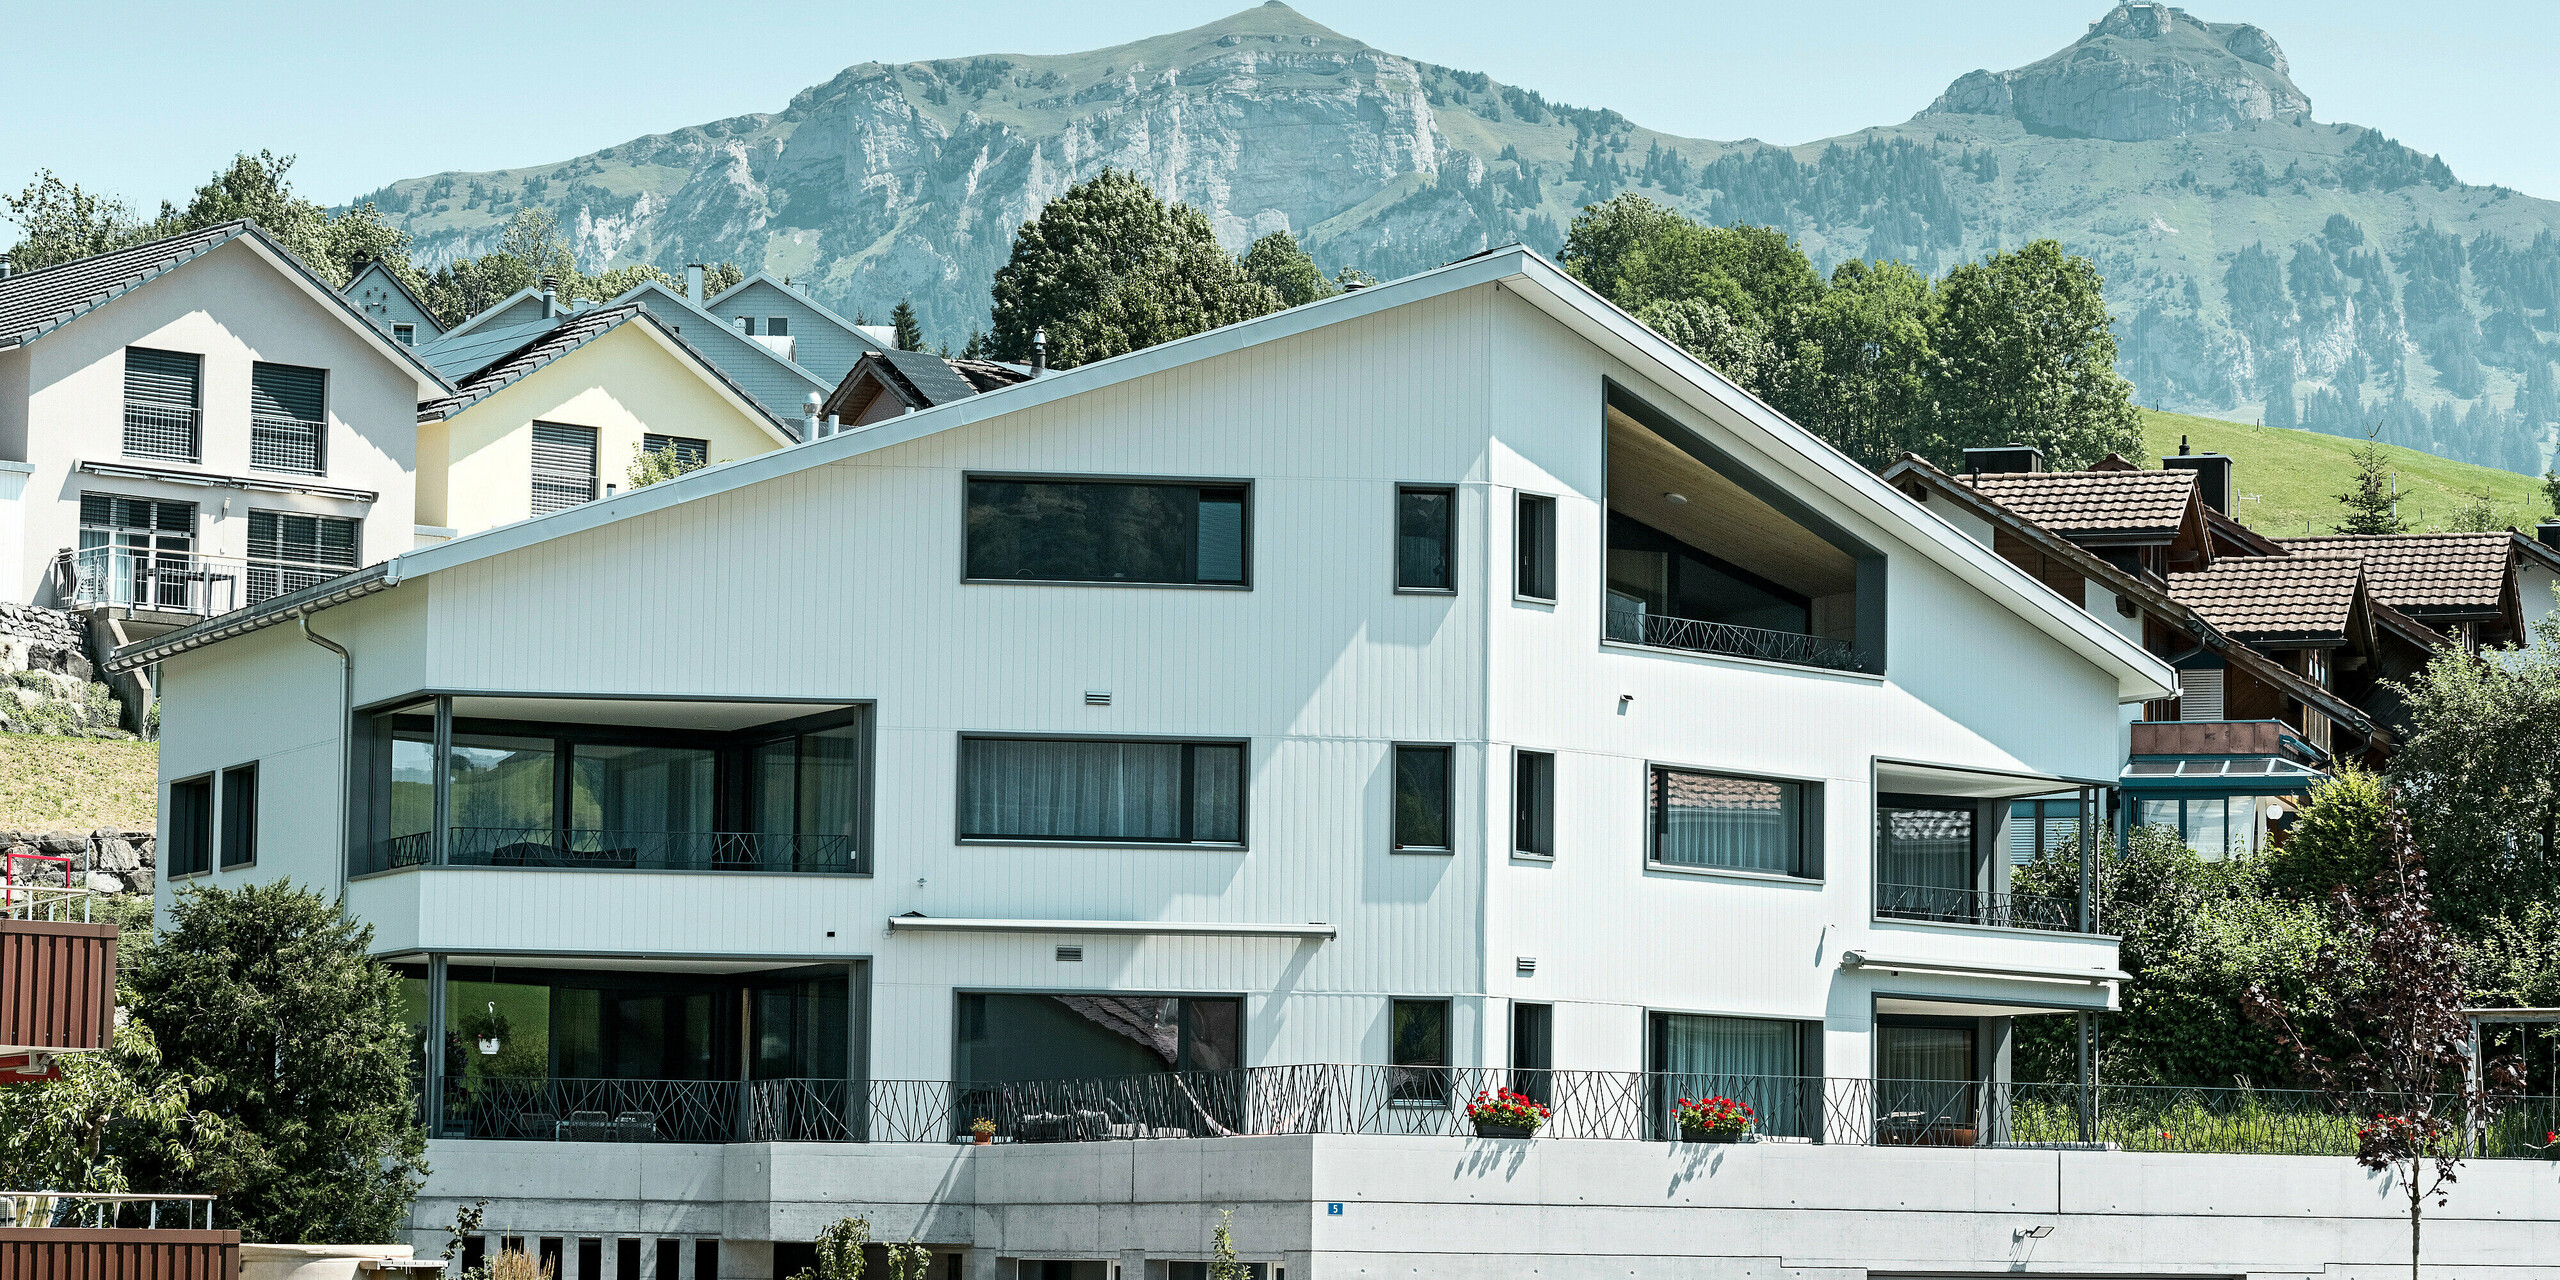 Dieses moderne Mehrfamilienhaus in Weissbad, Schweiz, sticht mit seiner strahlenden PREFA Aluminiumfassade in P.10 Prefaweiß hervor. Die PREFA Sidings sind präzise in vertikaler Ausrichtung angebracht, was dem Gebäude eine klare Struktur verleiht. Die Fassade spiegelt die Flexibilität und Ästhetik wider, für die PREFA Aluminiumprodukte stehen. Die spitze Gebäudeform passt perfekt zu der beeindruckenden Kulisse des majestätischen Alpenpanoramas im Hintergrund.